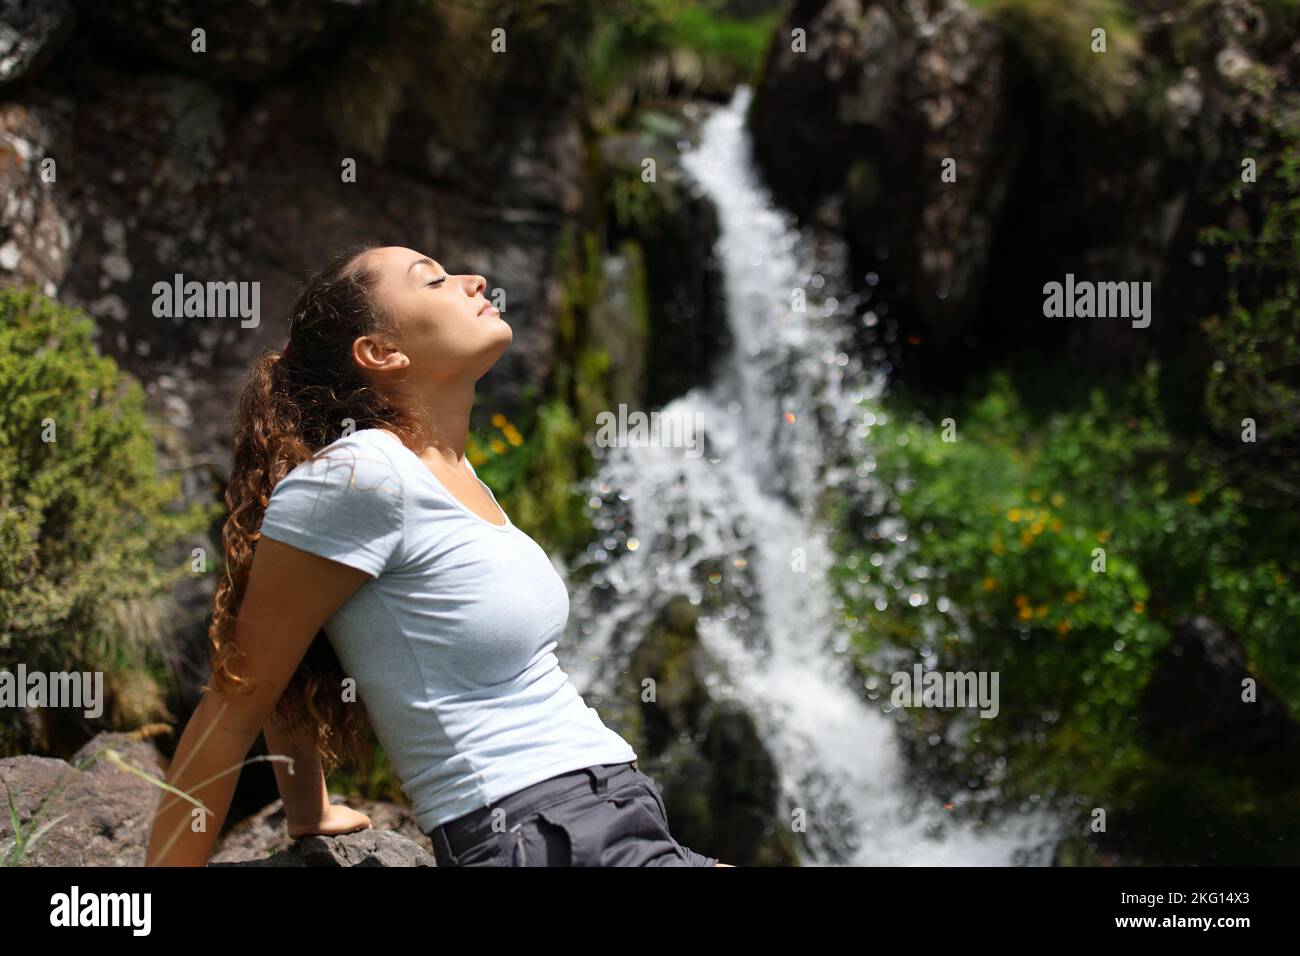 Profil einer Frau, die sich entspannt und frische Luft in einem kleinen Wasserfall atmet Stockfoto